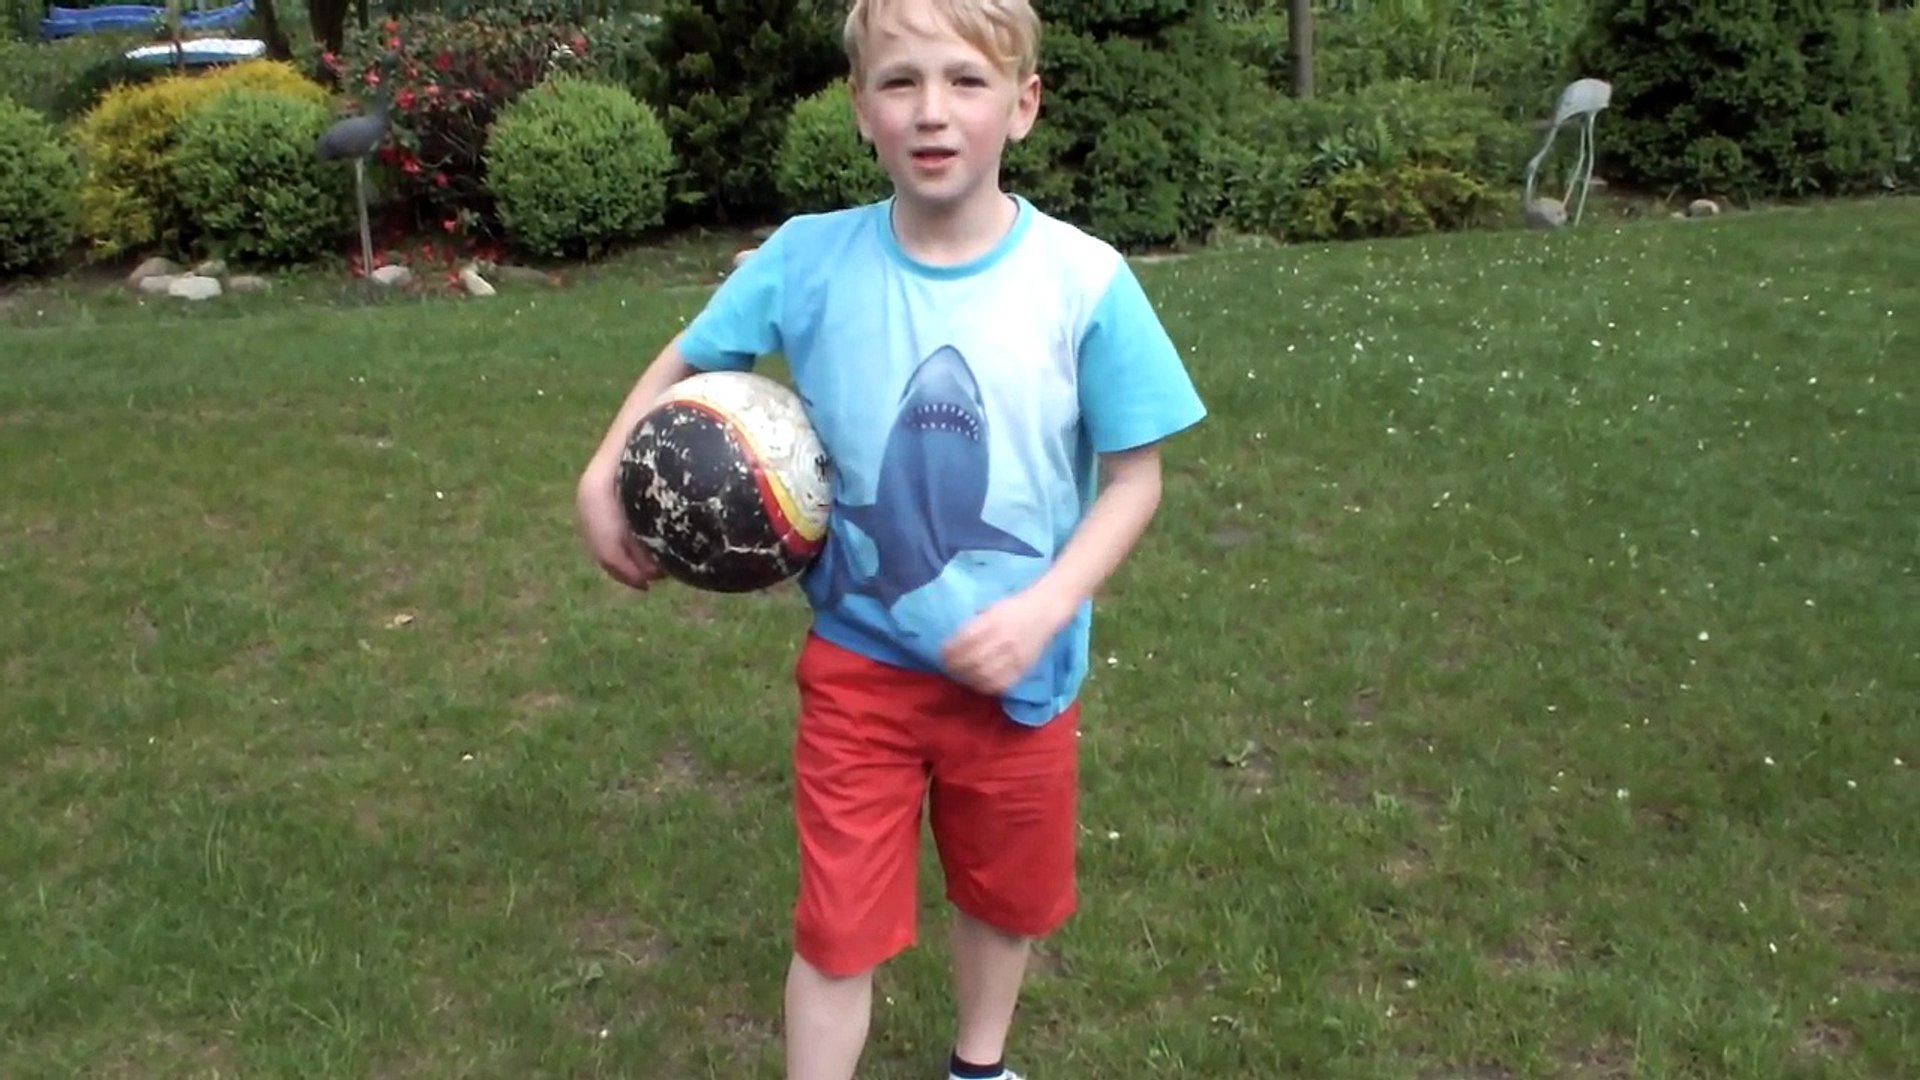 Fußball Tricks für Anfänger vom Jung Profi - video Dailymotion